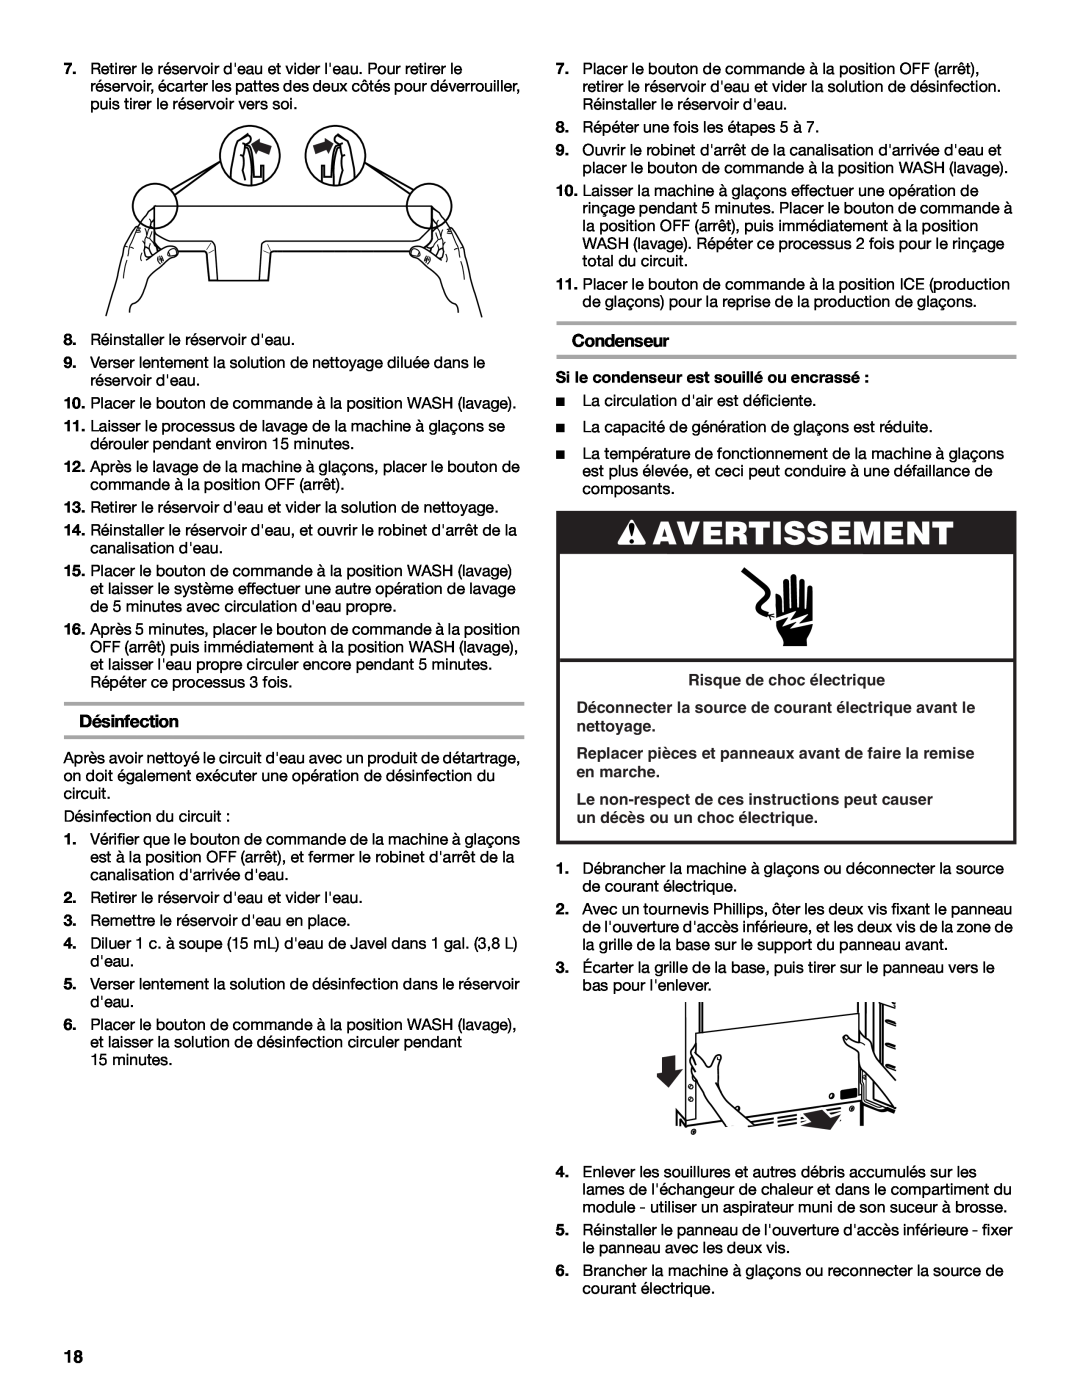 KitchenAid KUIO15NNLS manual Désinfection, Condenseur, Risque de choc électrique, Avertissement 